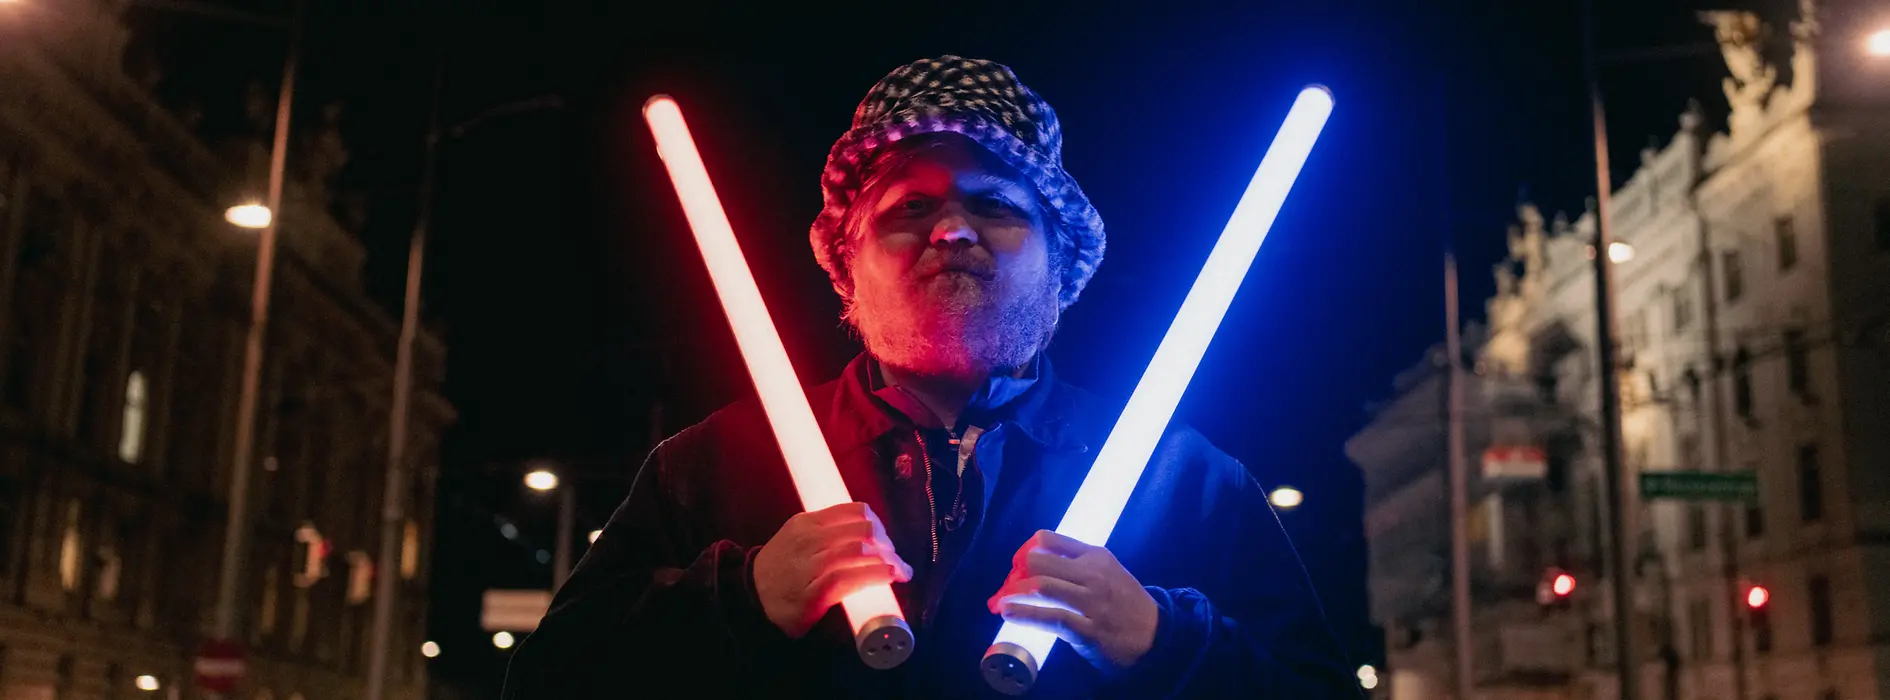 Le chef Lukas Mraz en Jedi avec son sabre laser